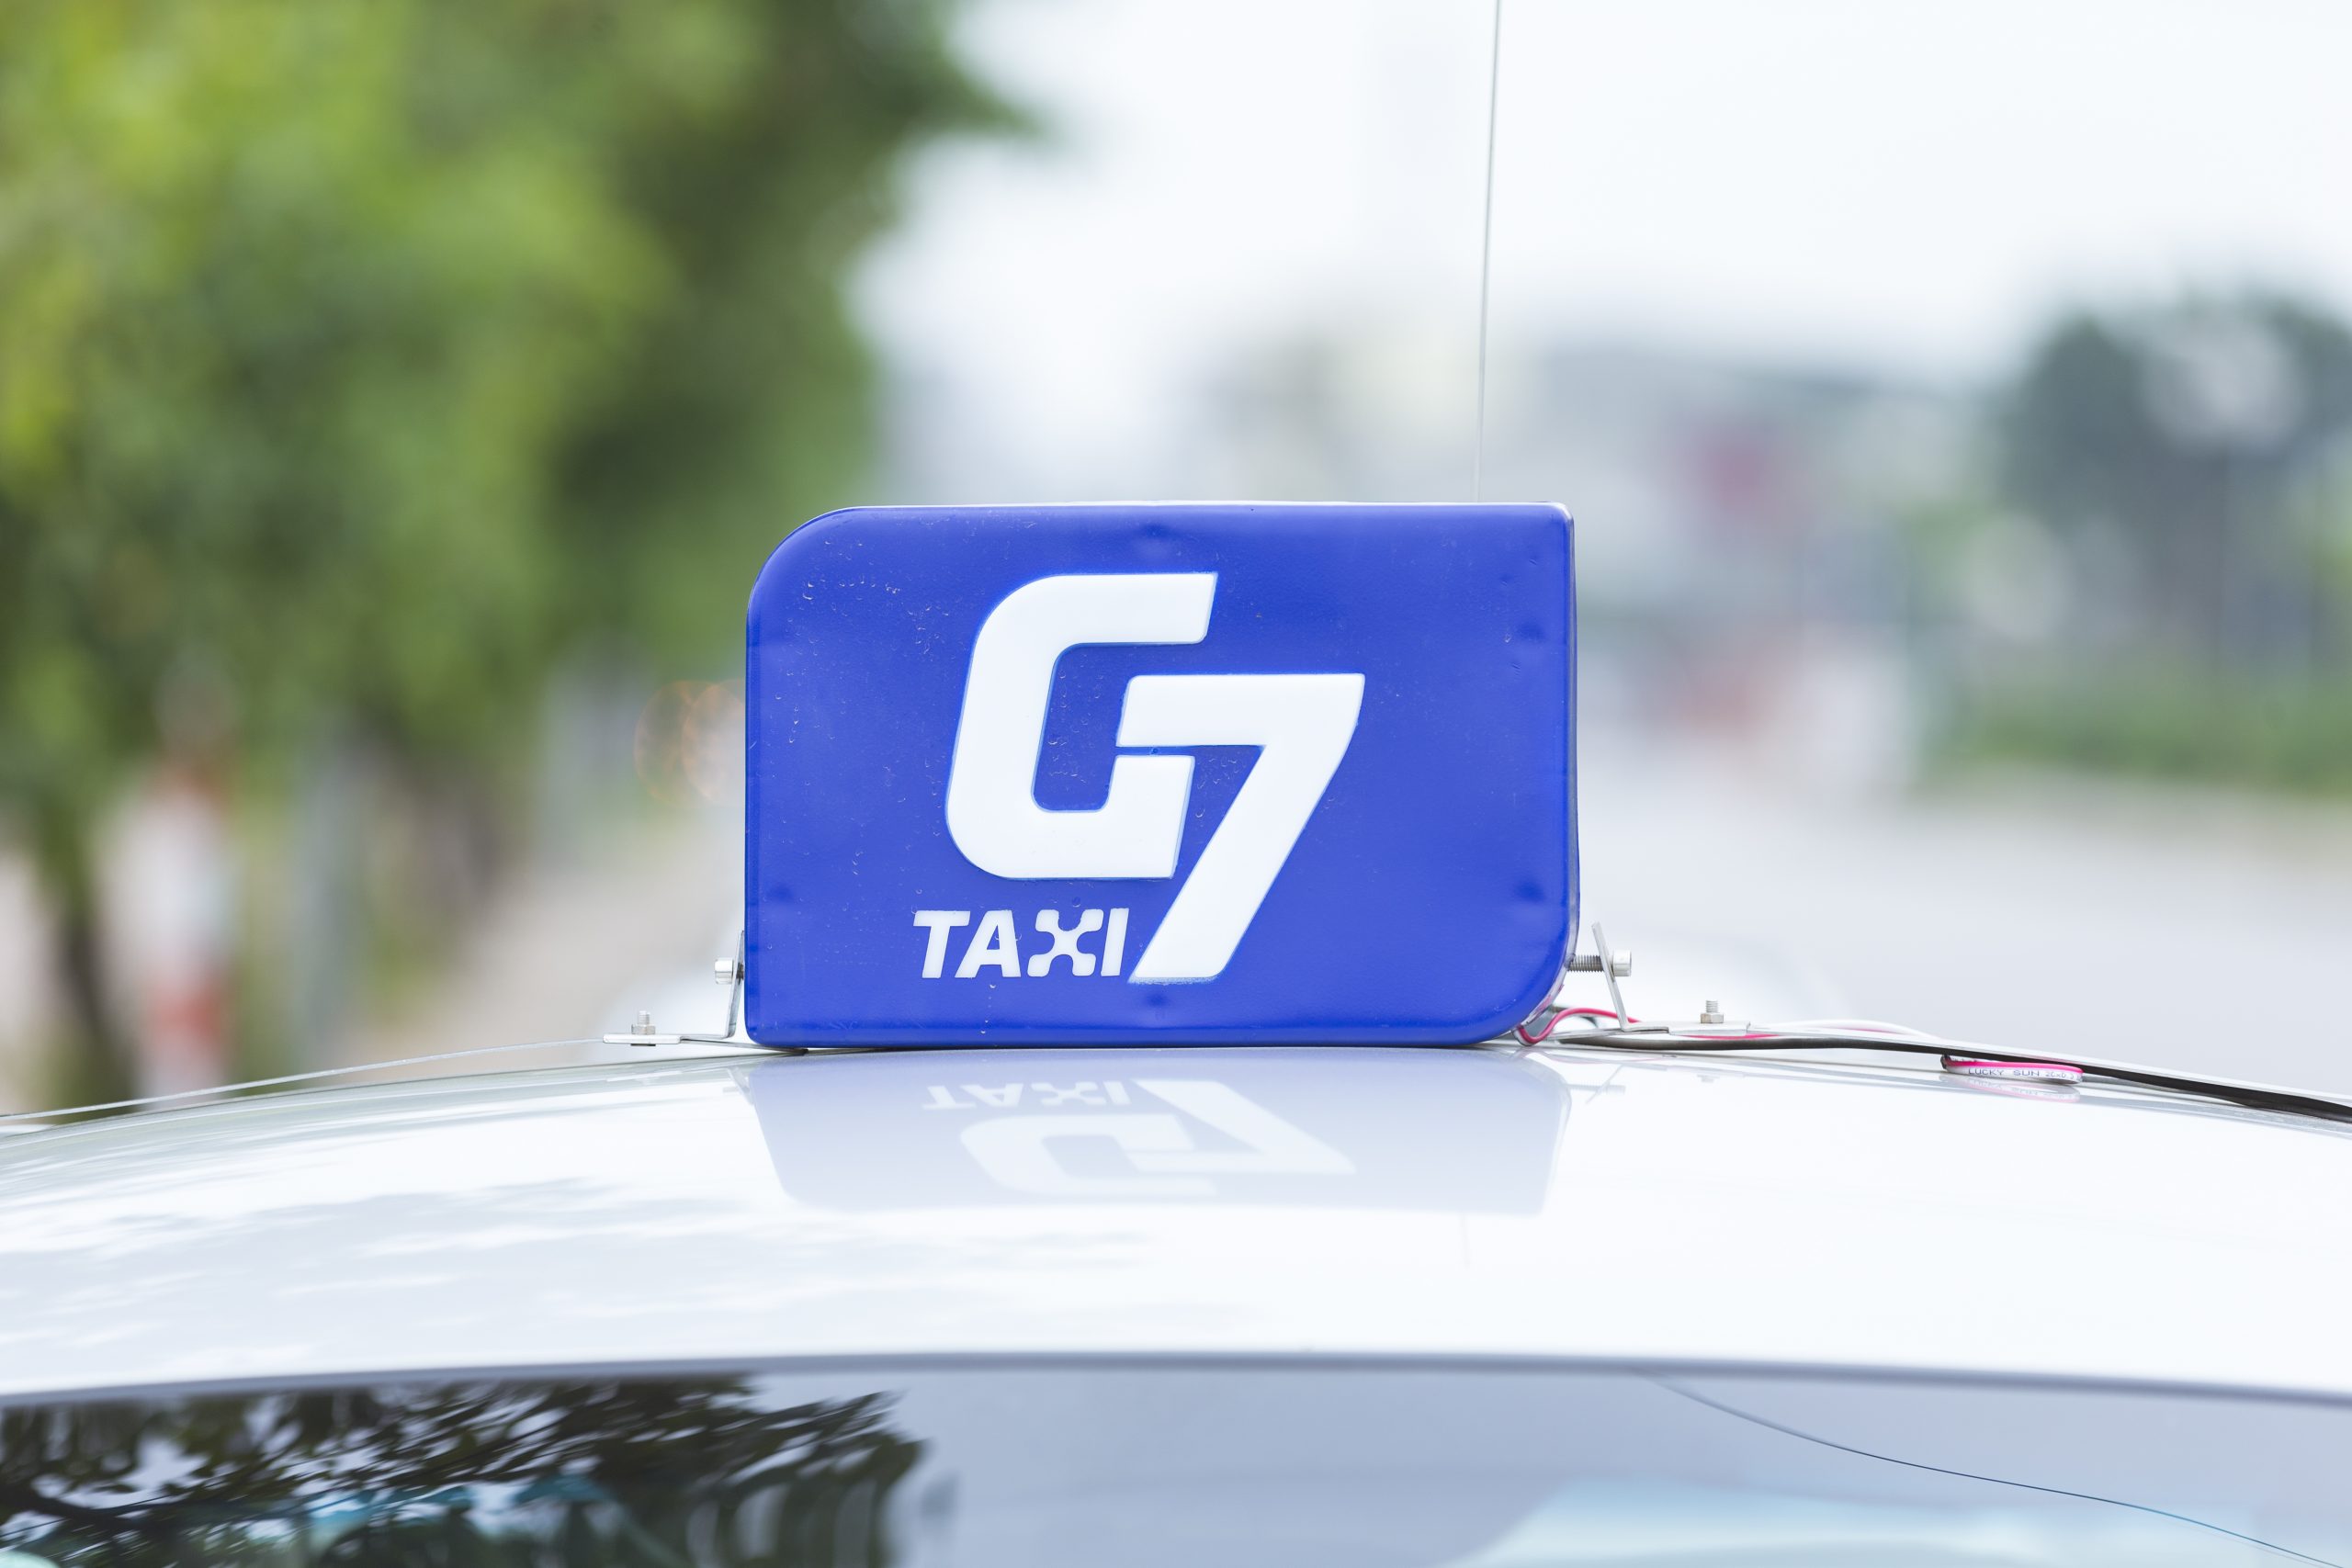 G7 Taxi tư vấn chất lượng cao